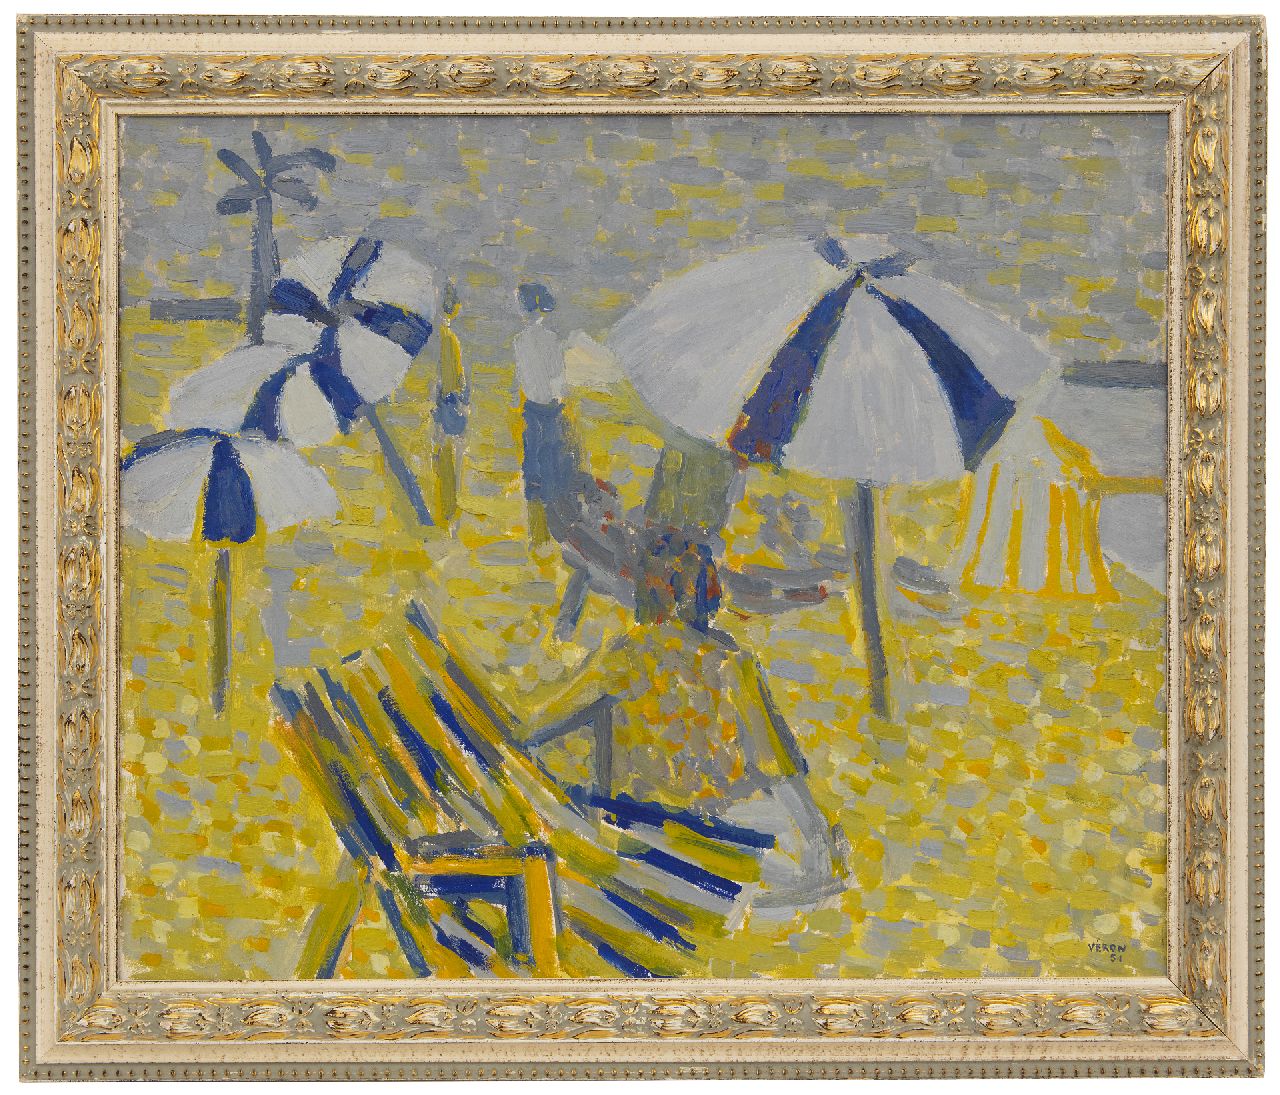 Véron V.  | Véronique Véron | Schilderijen te koop aangeboden | Parasols op het strand, olieverf op doek 54,0 x 65,0 cm, gesigneerd rechtsonder en gedateerd '51